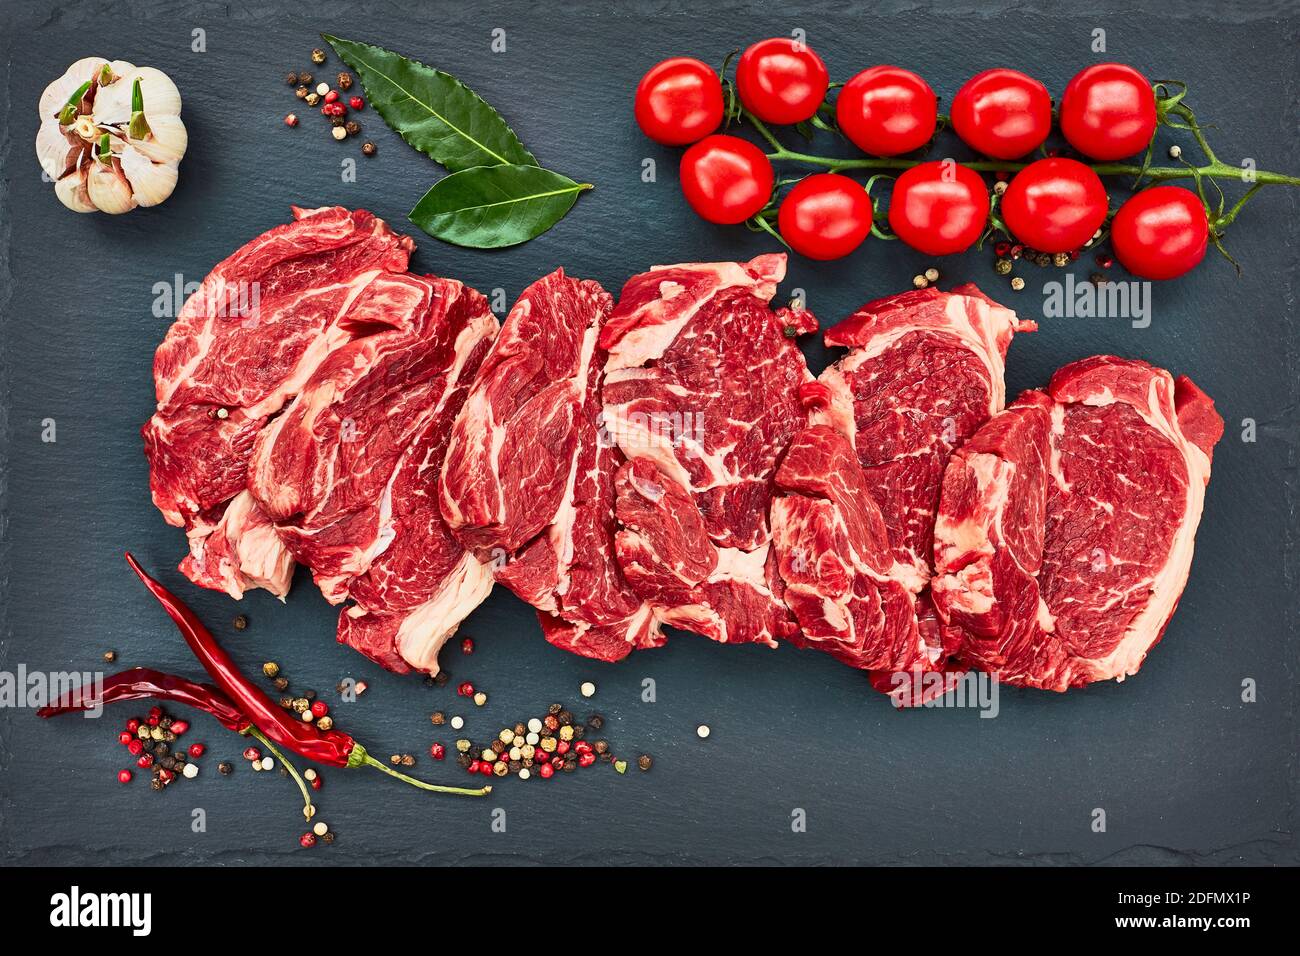 Frische rohe Rindersteaks mit Pfeffer und Tomaten auf schwarzem Schieferbrett. Platz kopieren, Draufsicht. Stockfoto